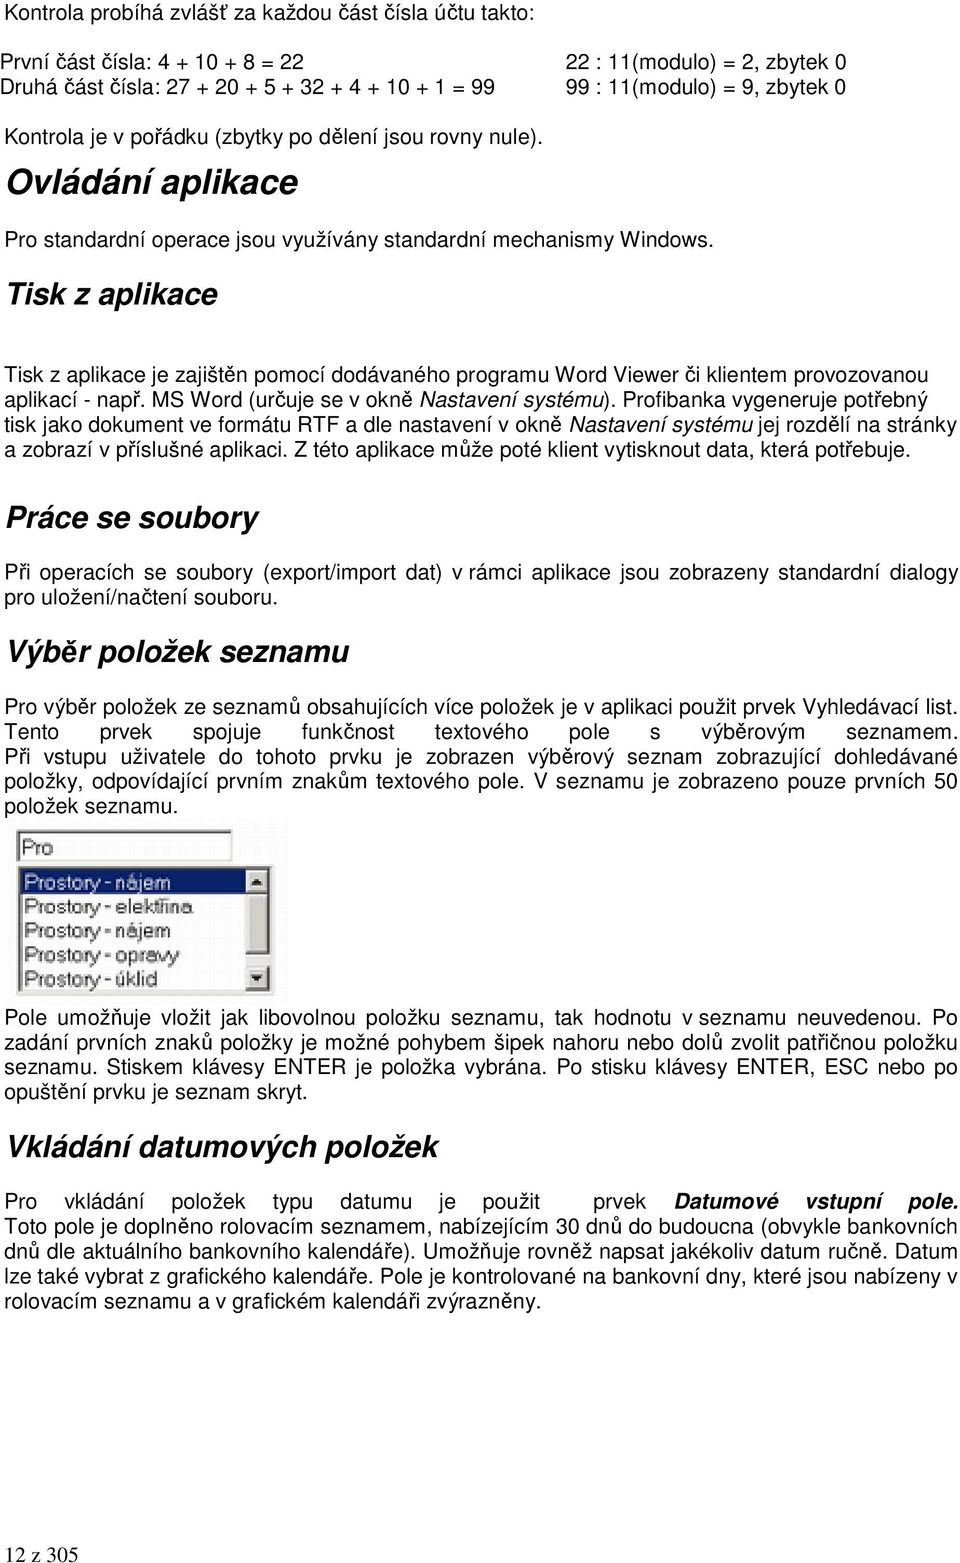 Tisk z aplikace Tisk z aplikace je zajištěn pomocí dodávaného programu Word Viewer či klientem provozovanou aplikací - např. MS Word (určuje se v okně Nastavení systému).